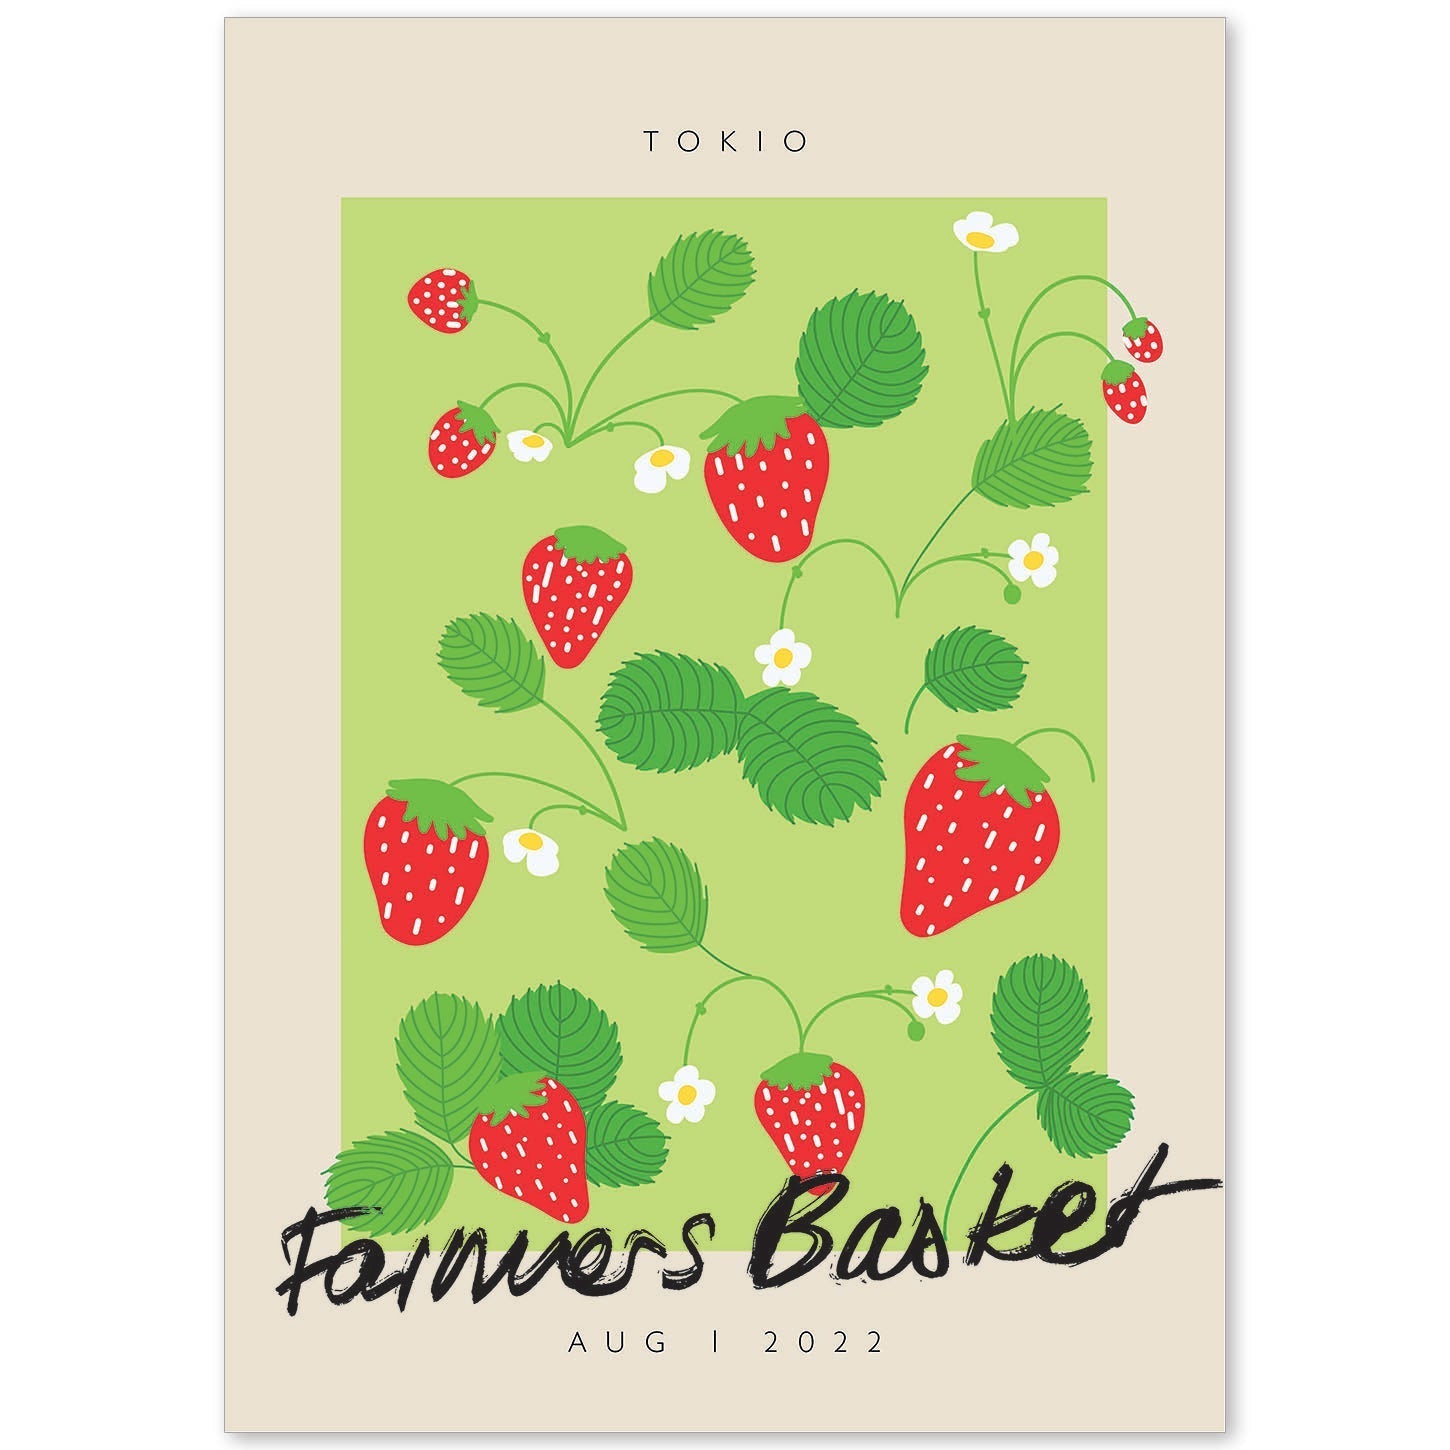 Lamina artistica decorativa con ilustración de Cesta de agricultores Tokio-Artwork-Nacnic-A4-Sin marco-Nacnic Estudio SL